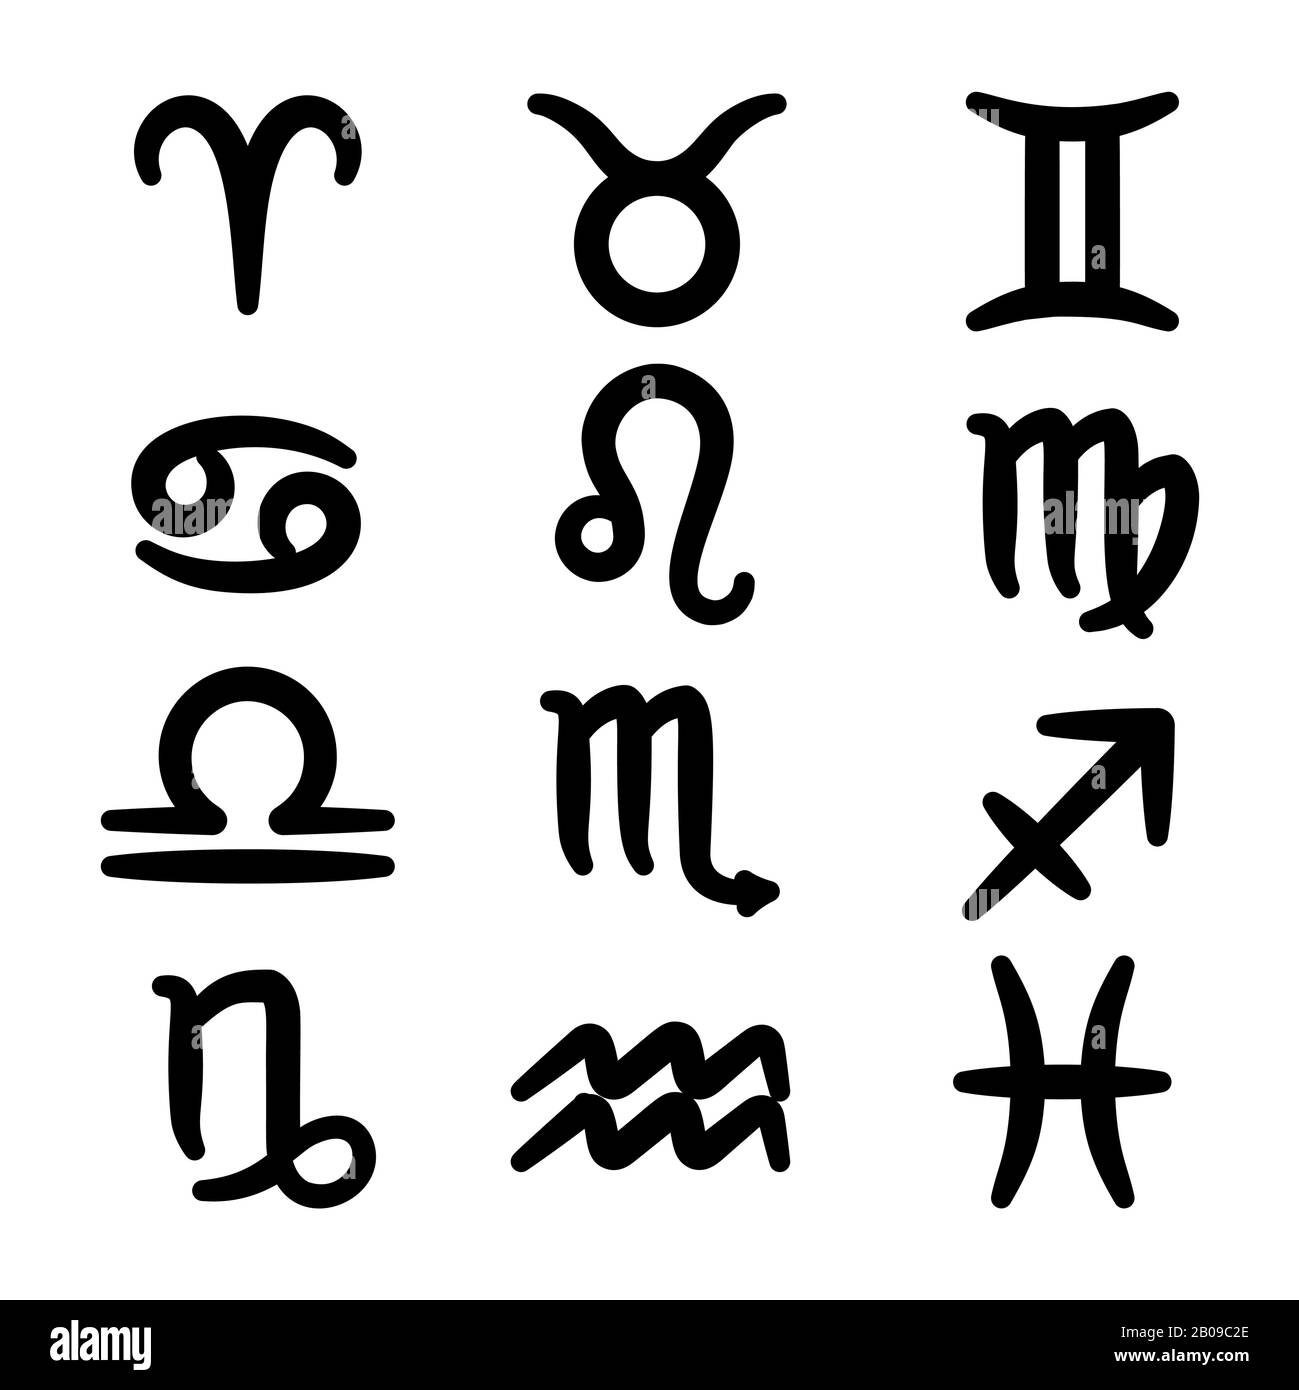 Ensemble de Zodiac vecteur épais signe un fond blanc. Capricorne et vierge, gémeaux et verseau illustration Illustration de Vecteur